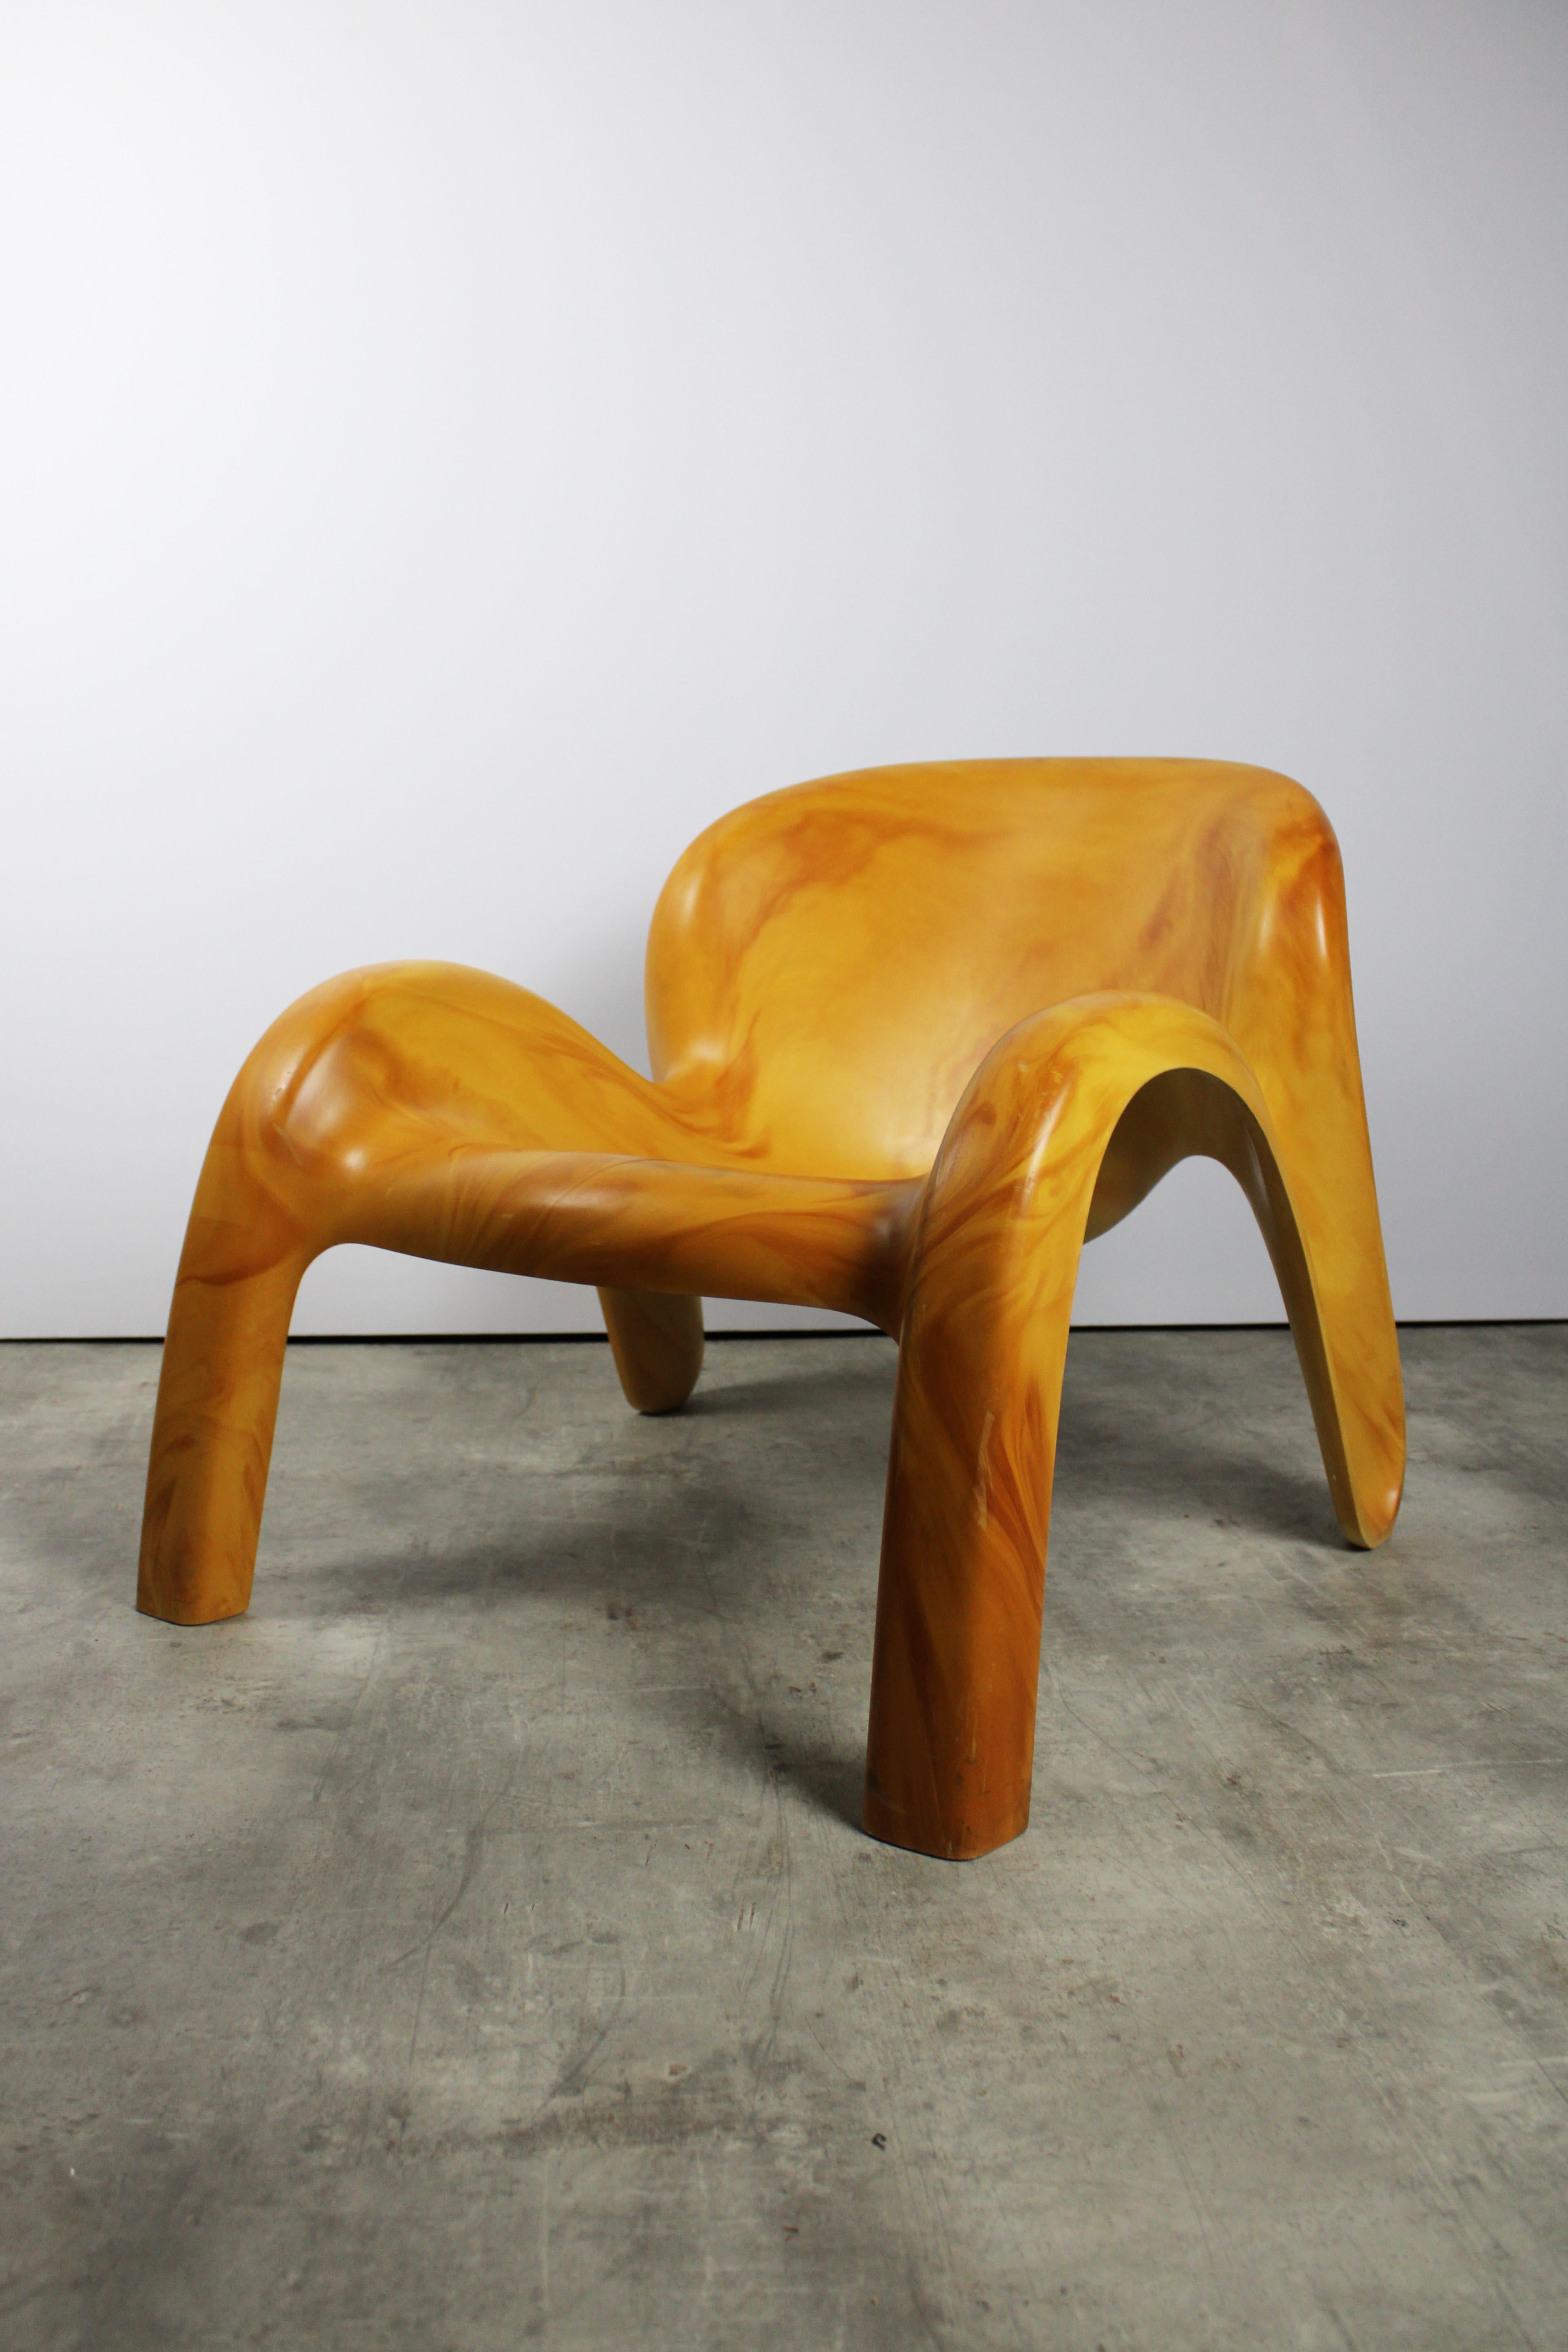 La chaise de jardin GN2 de Peter Ghyczy est l'un de ses plus célèbres chefs-d'œuvre de design. Cette version particulière, ornée d'un jaune ocre distinctif, est une édition limitée dont seulement une poignée a été créée, ce qui en fait un objet de